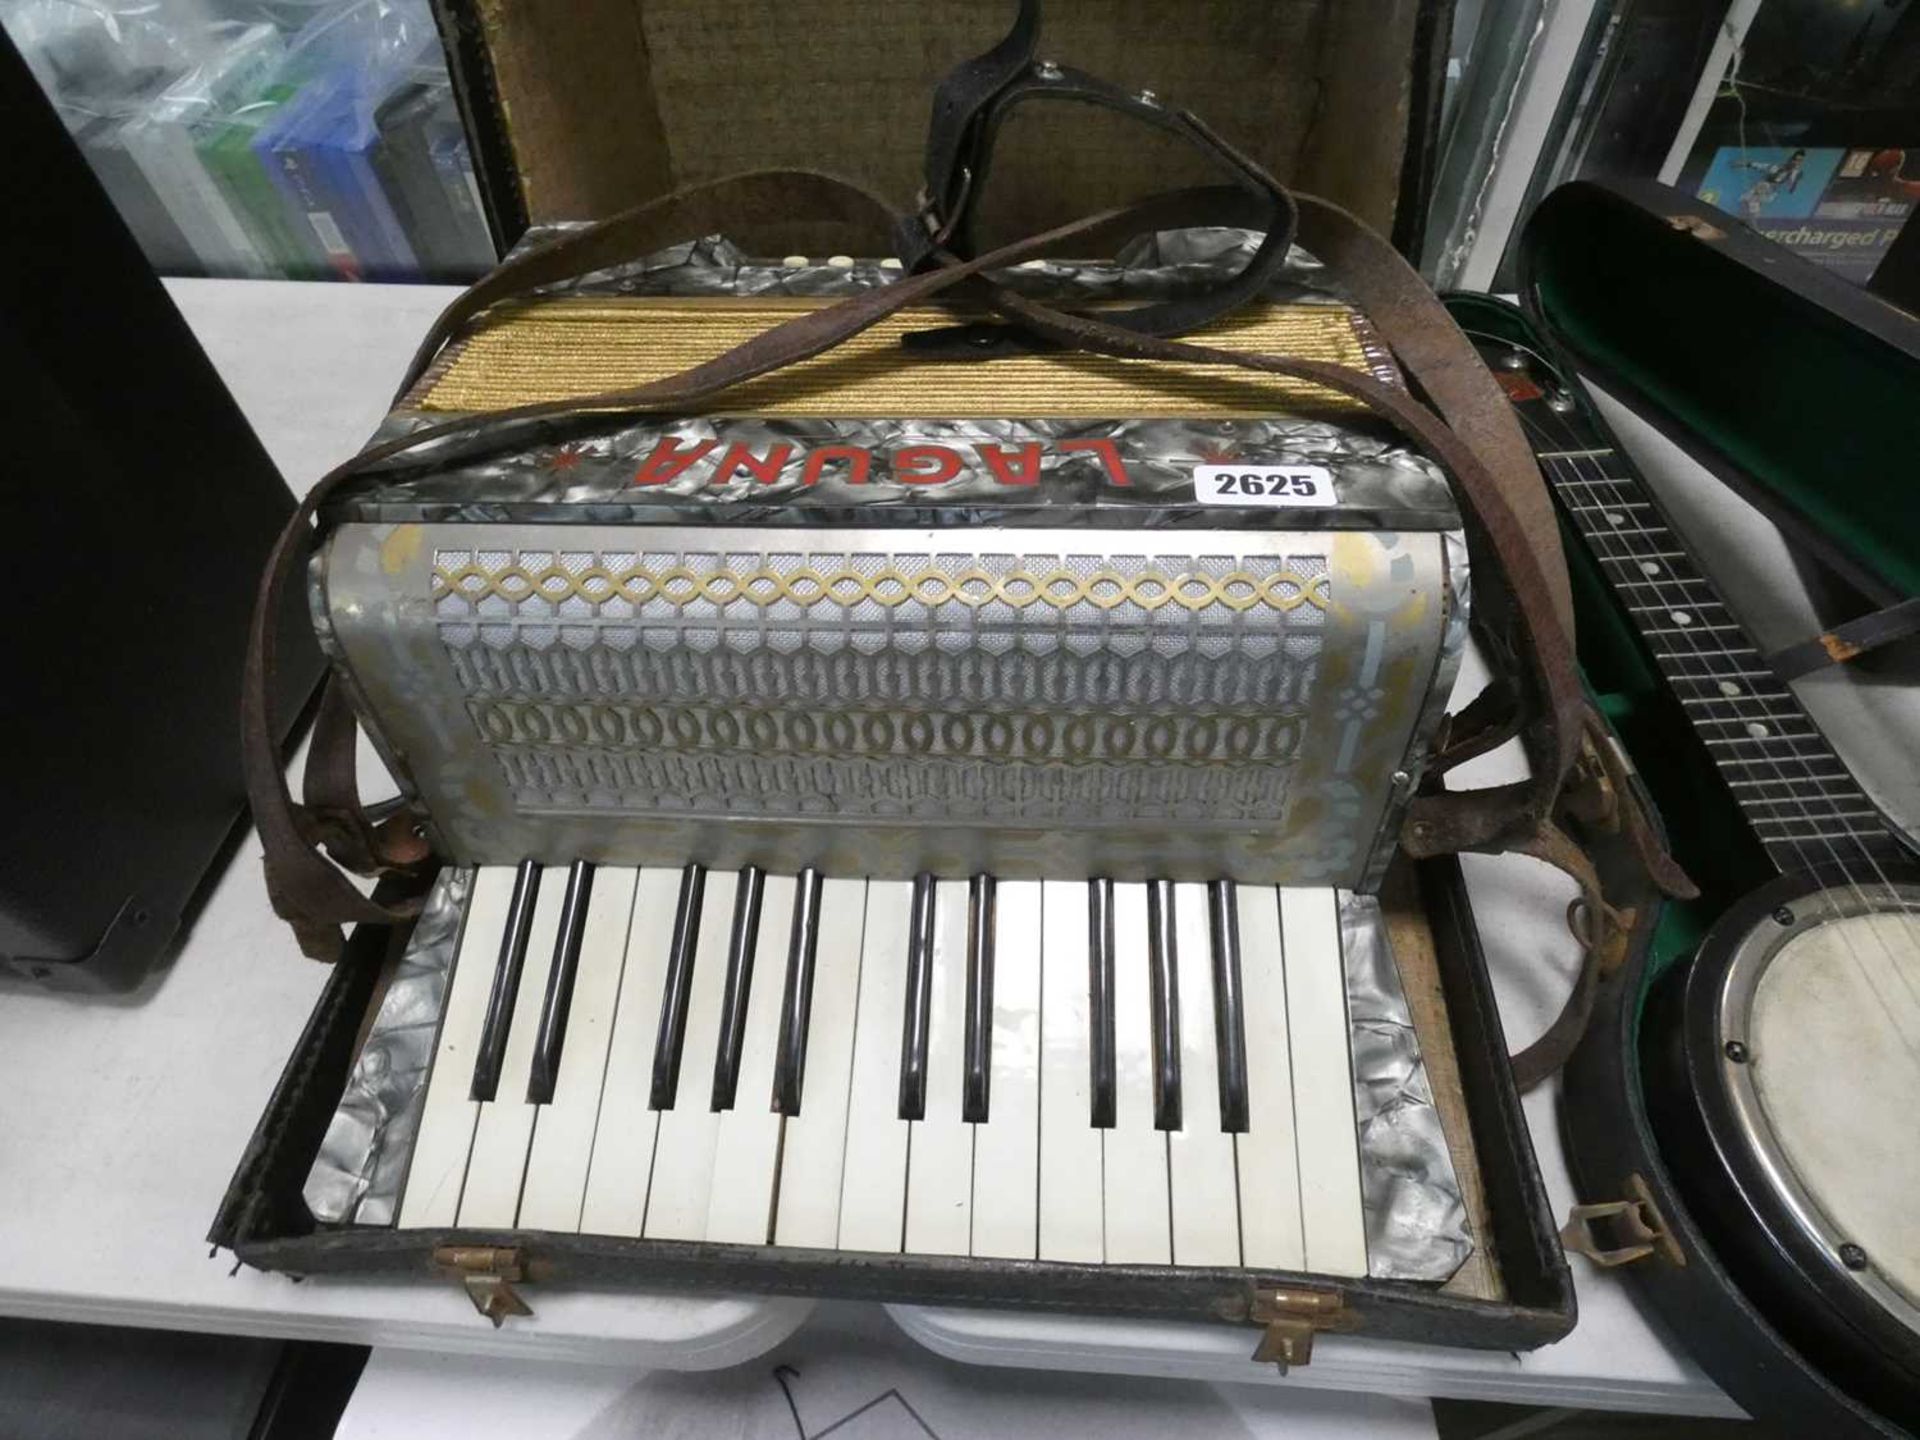 Laguna piano accordion with box